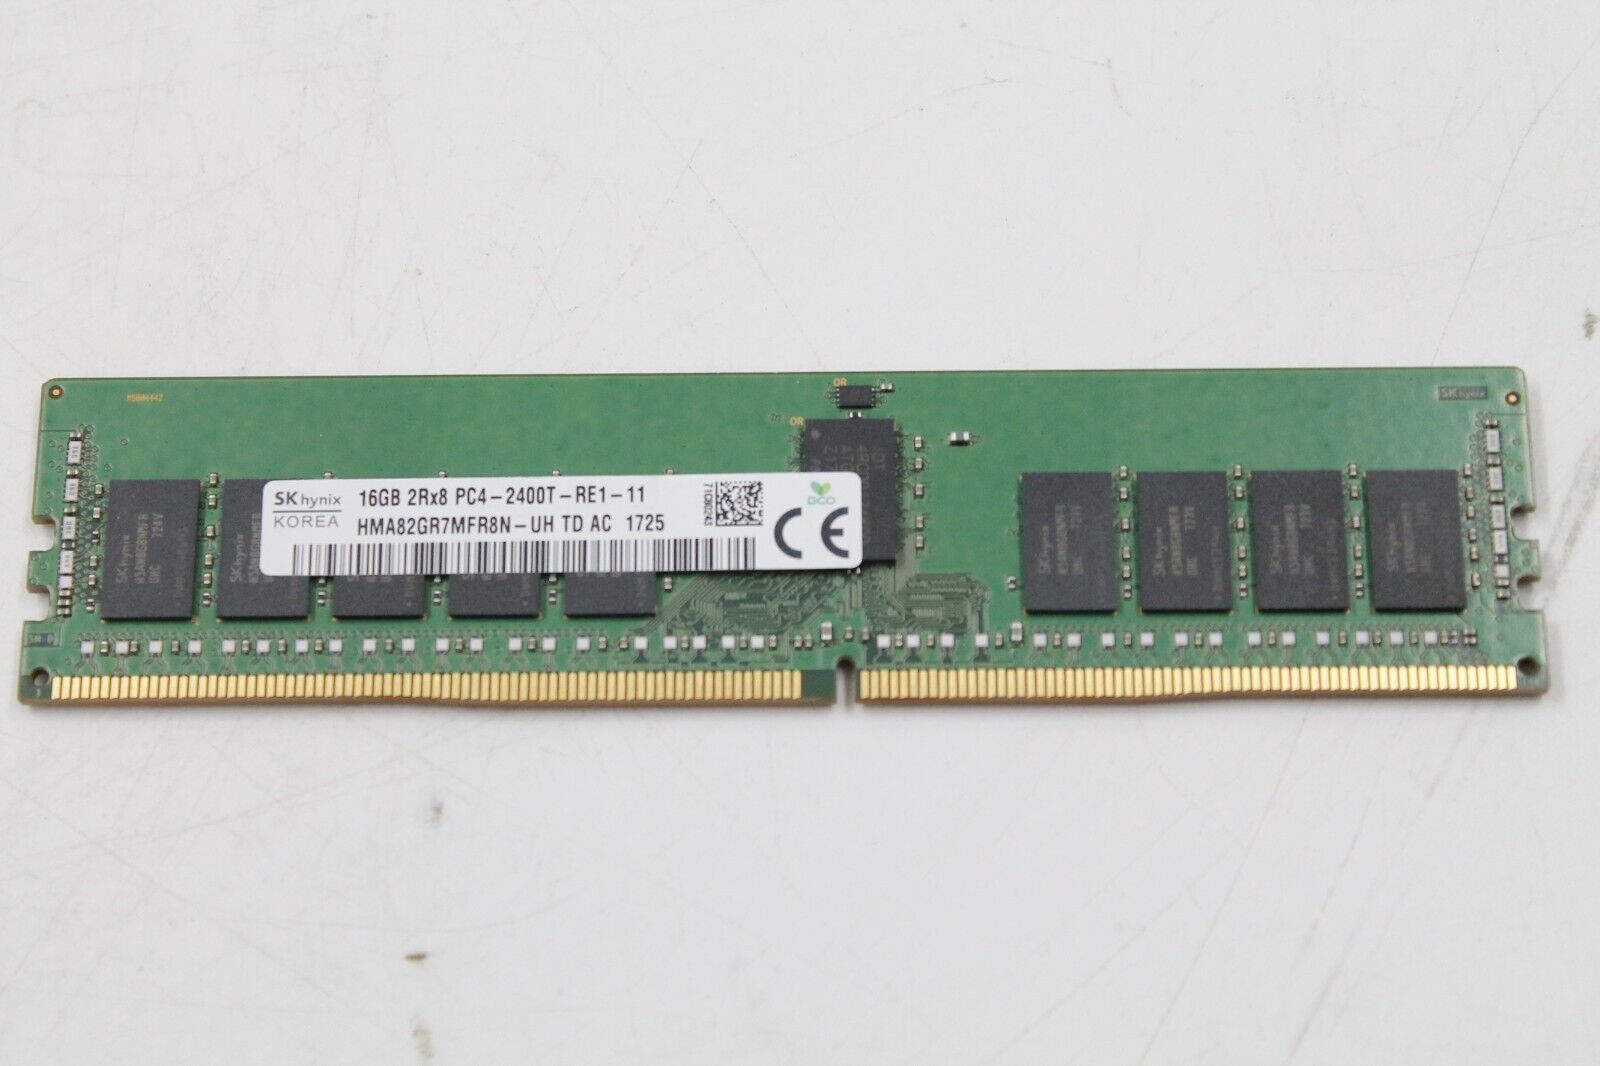 SK Hynix 16GB 2Rx8 PC4-2400T-RE1-11 HMA82GR7MFR8N-UH TD AC